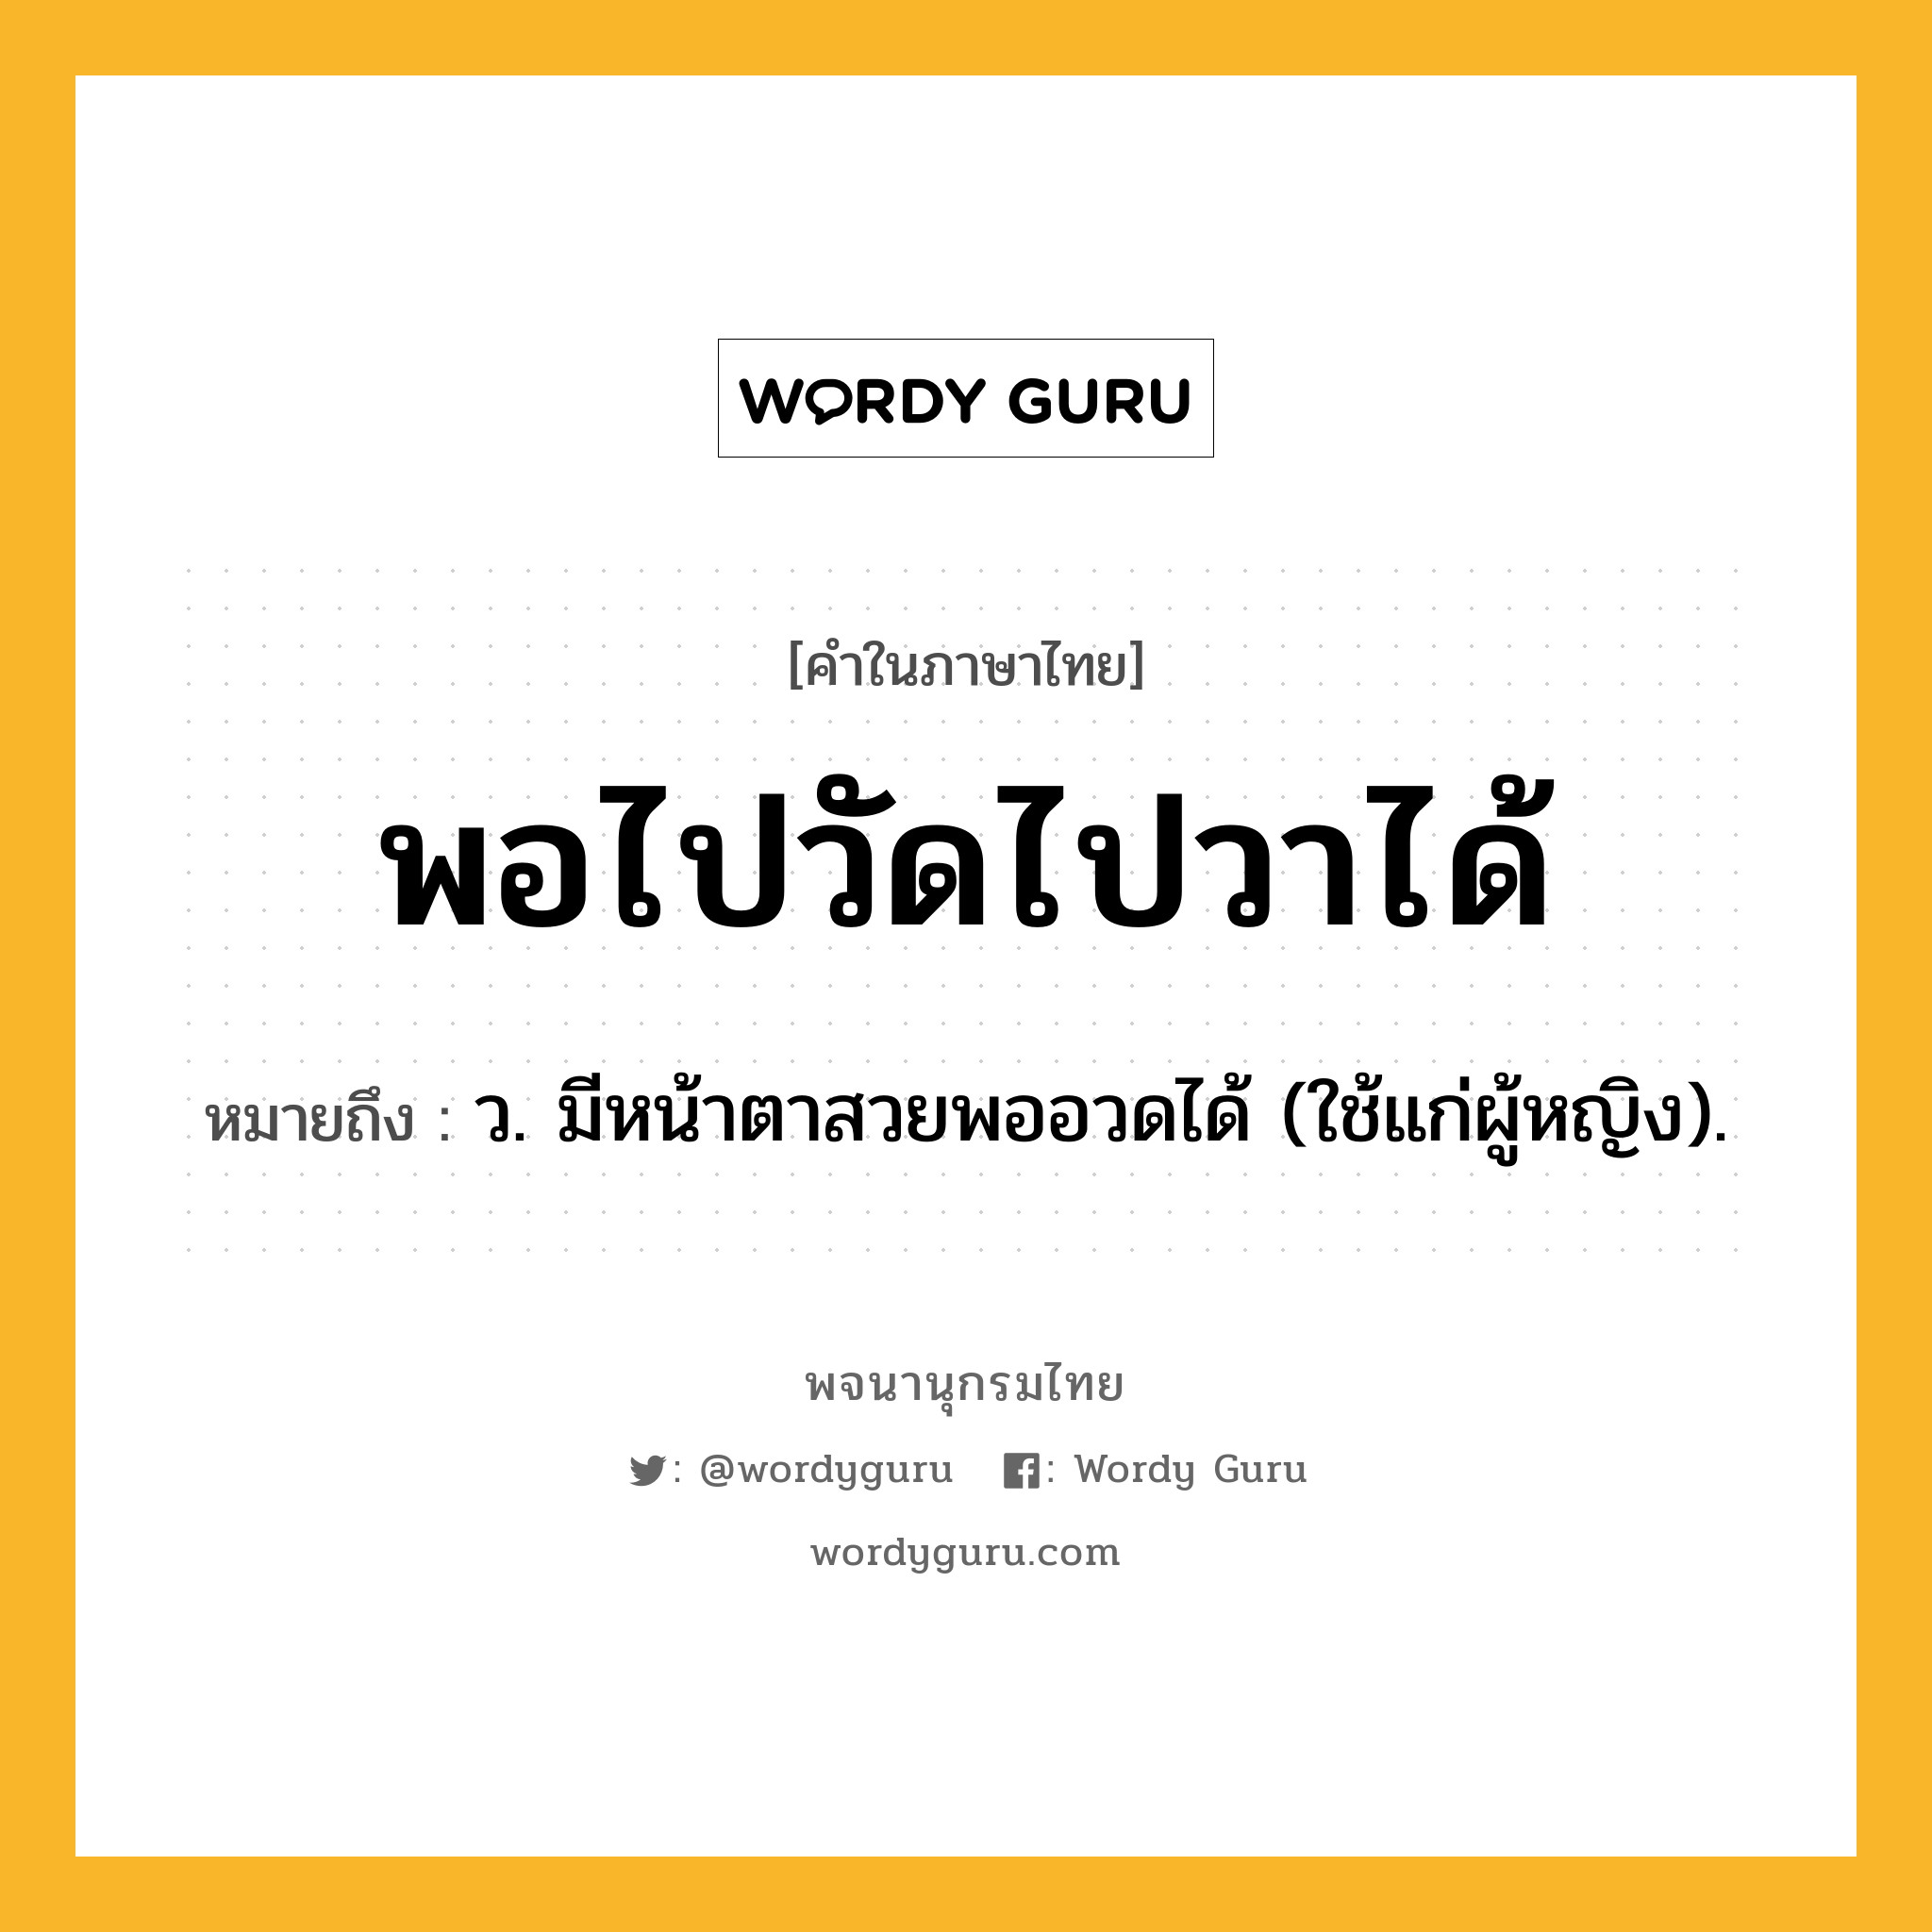 พอไปวัดไปวาได้ ความหมาย หมายถึงอะไร?, คำในภาษาไทย พอไปวัดไปวาได้ หมายถึง ว. มีหน้าตาสวยพออวดได้ (ใช้แก่ผู้หญิง).